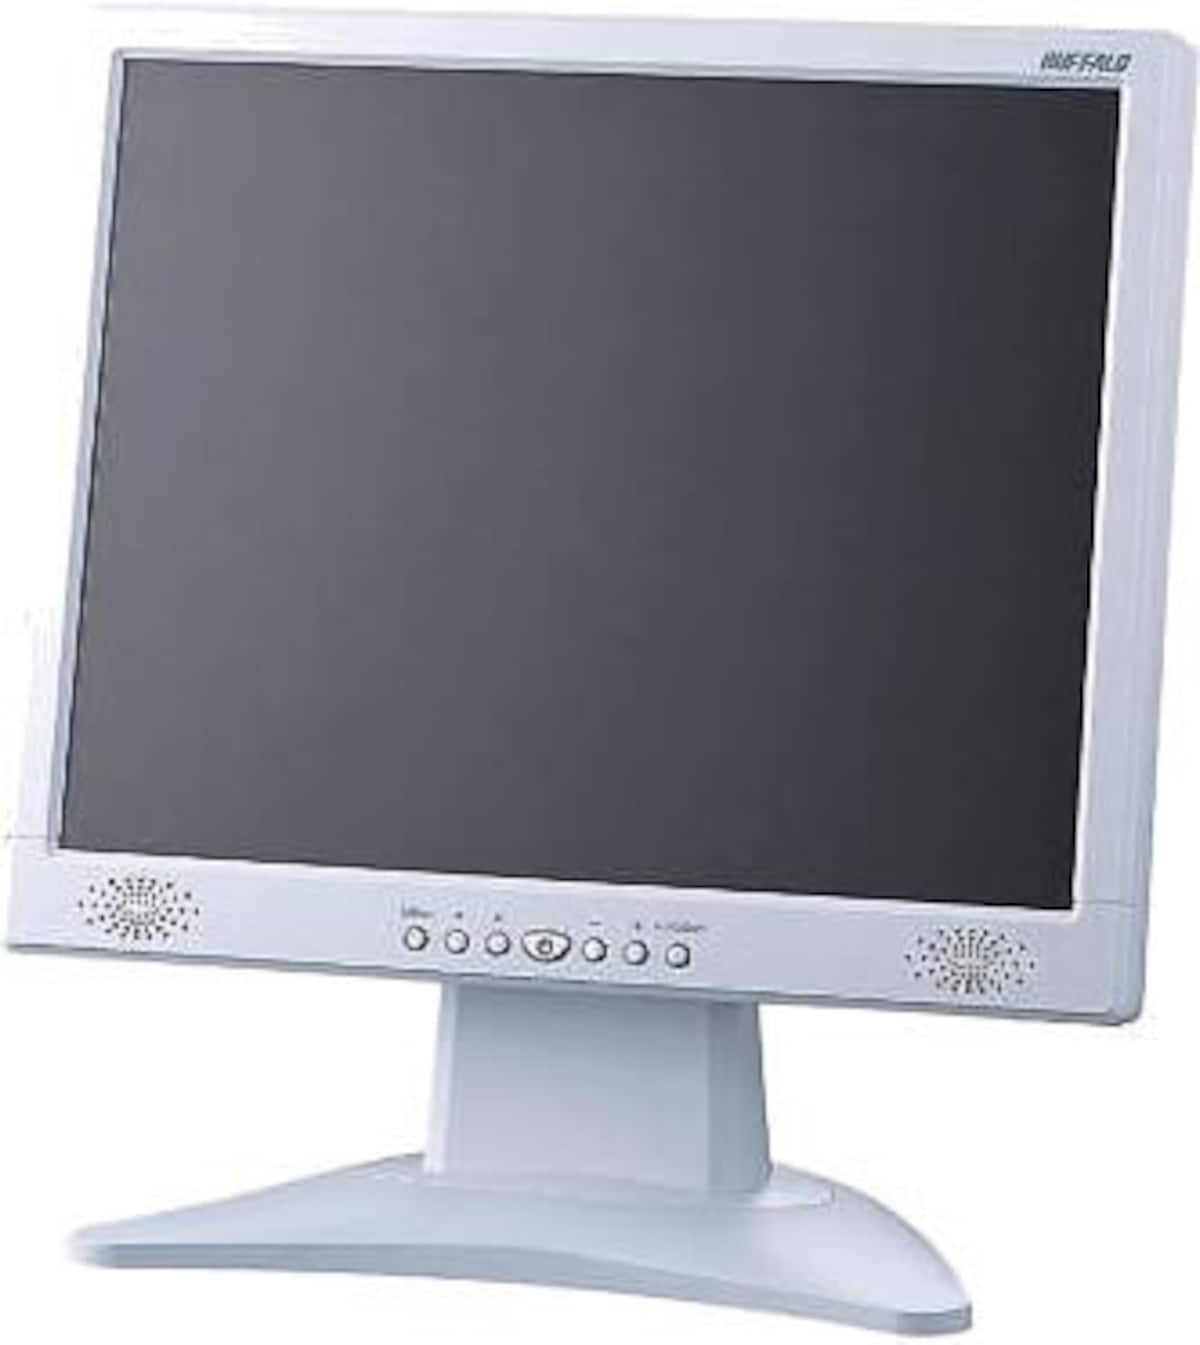 BUFFALO 15インチ液晶ディスプレイ FTD-X522AS ホワイト (XGA, アナログ, スピーカー内蔵)